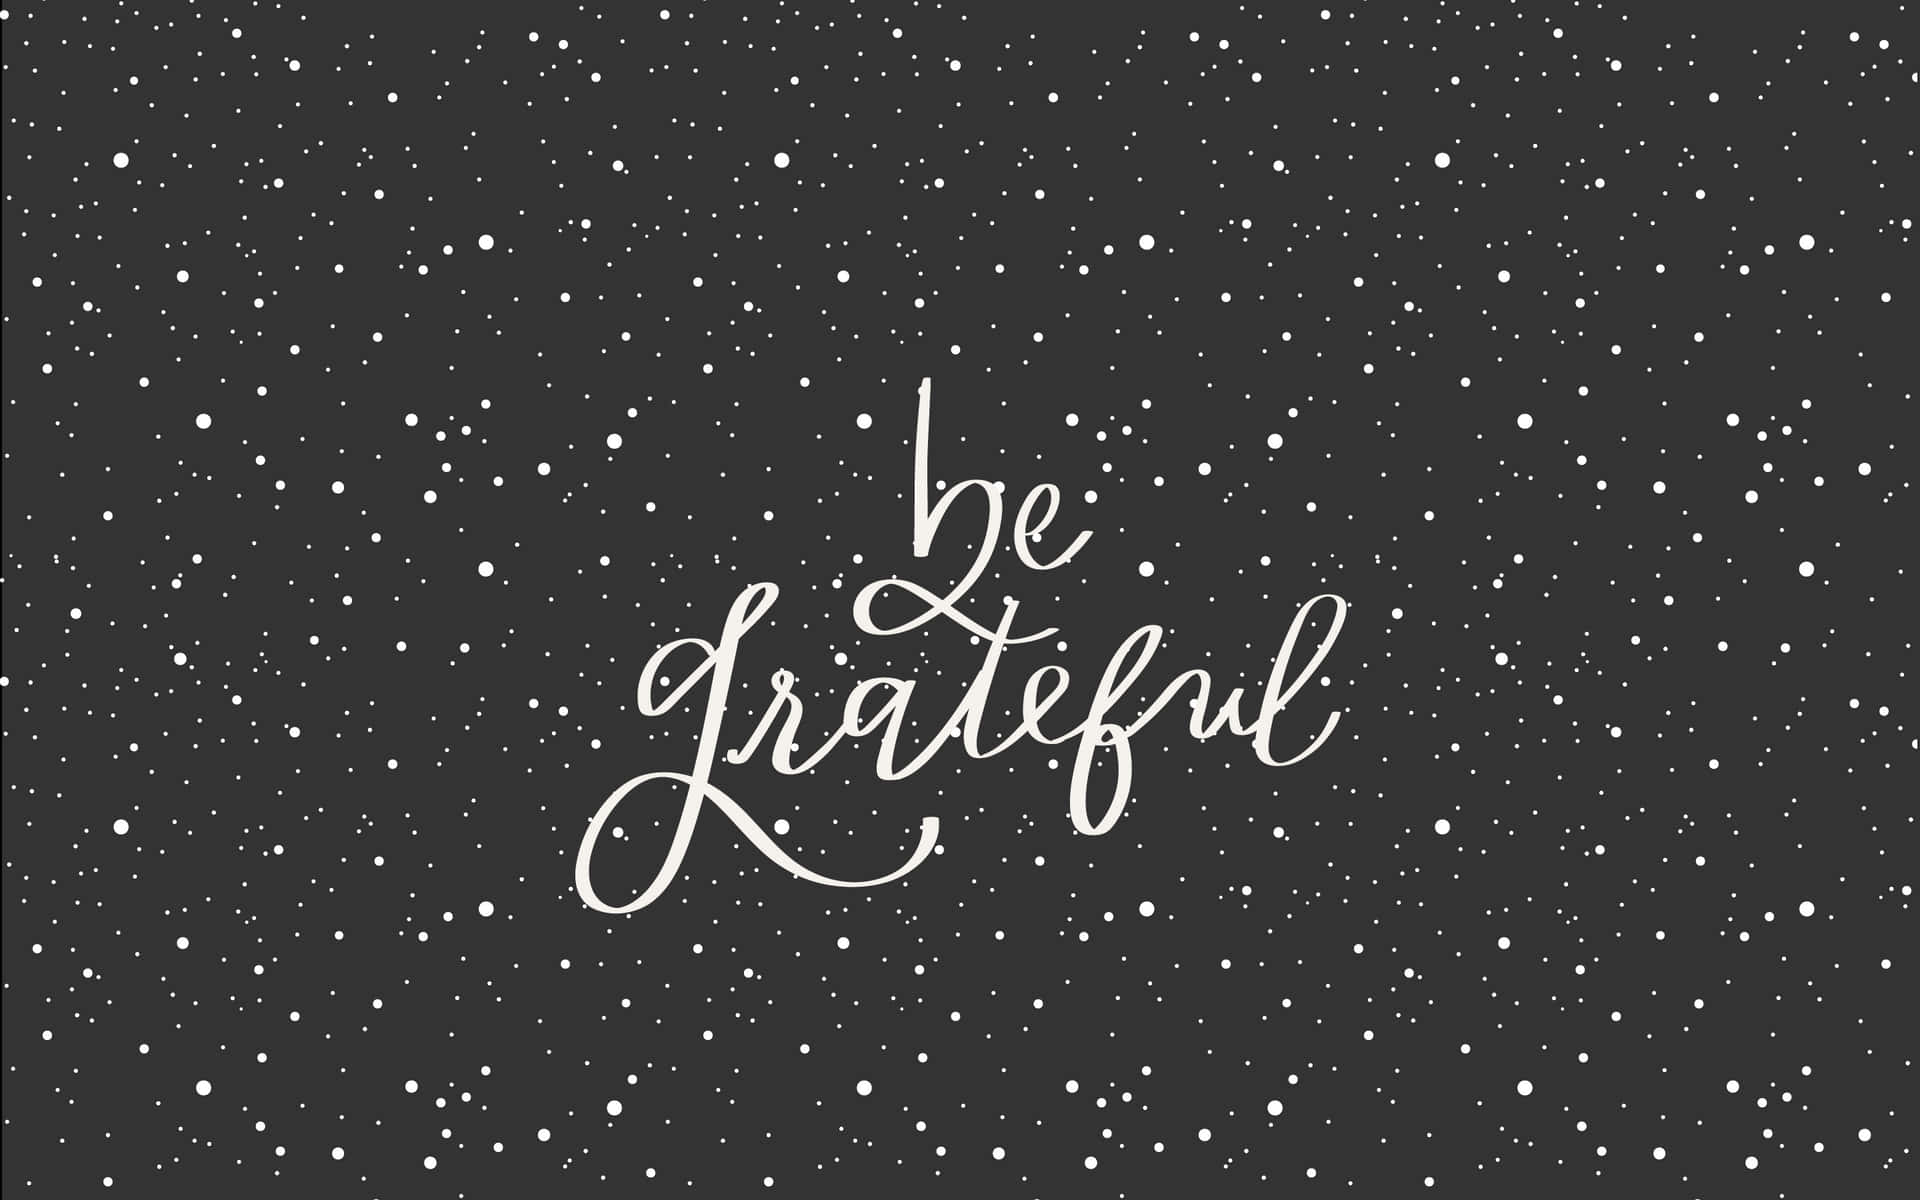 Download Gratitude Attitude Quote Wallpaper 